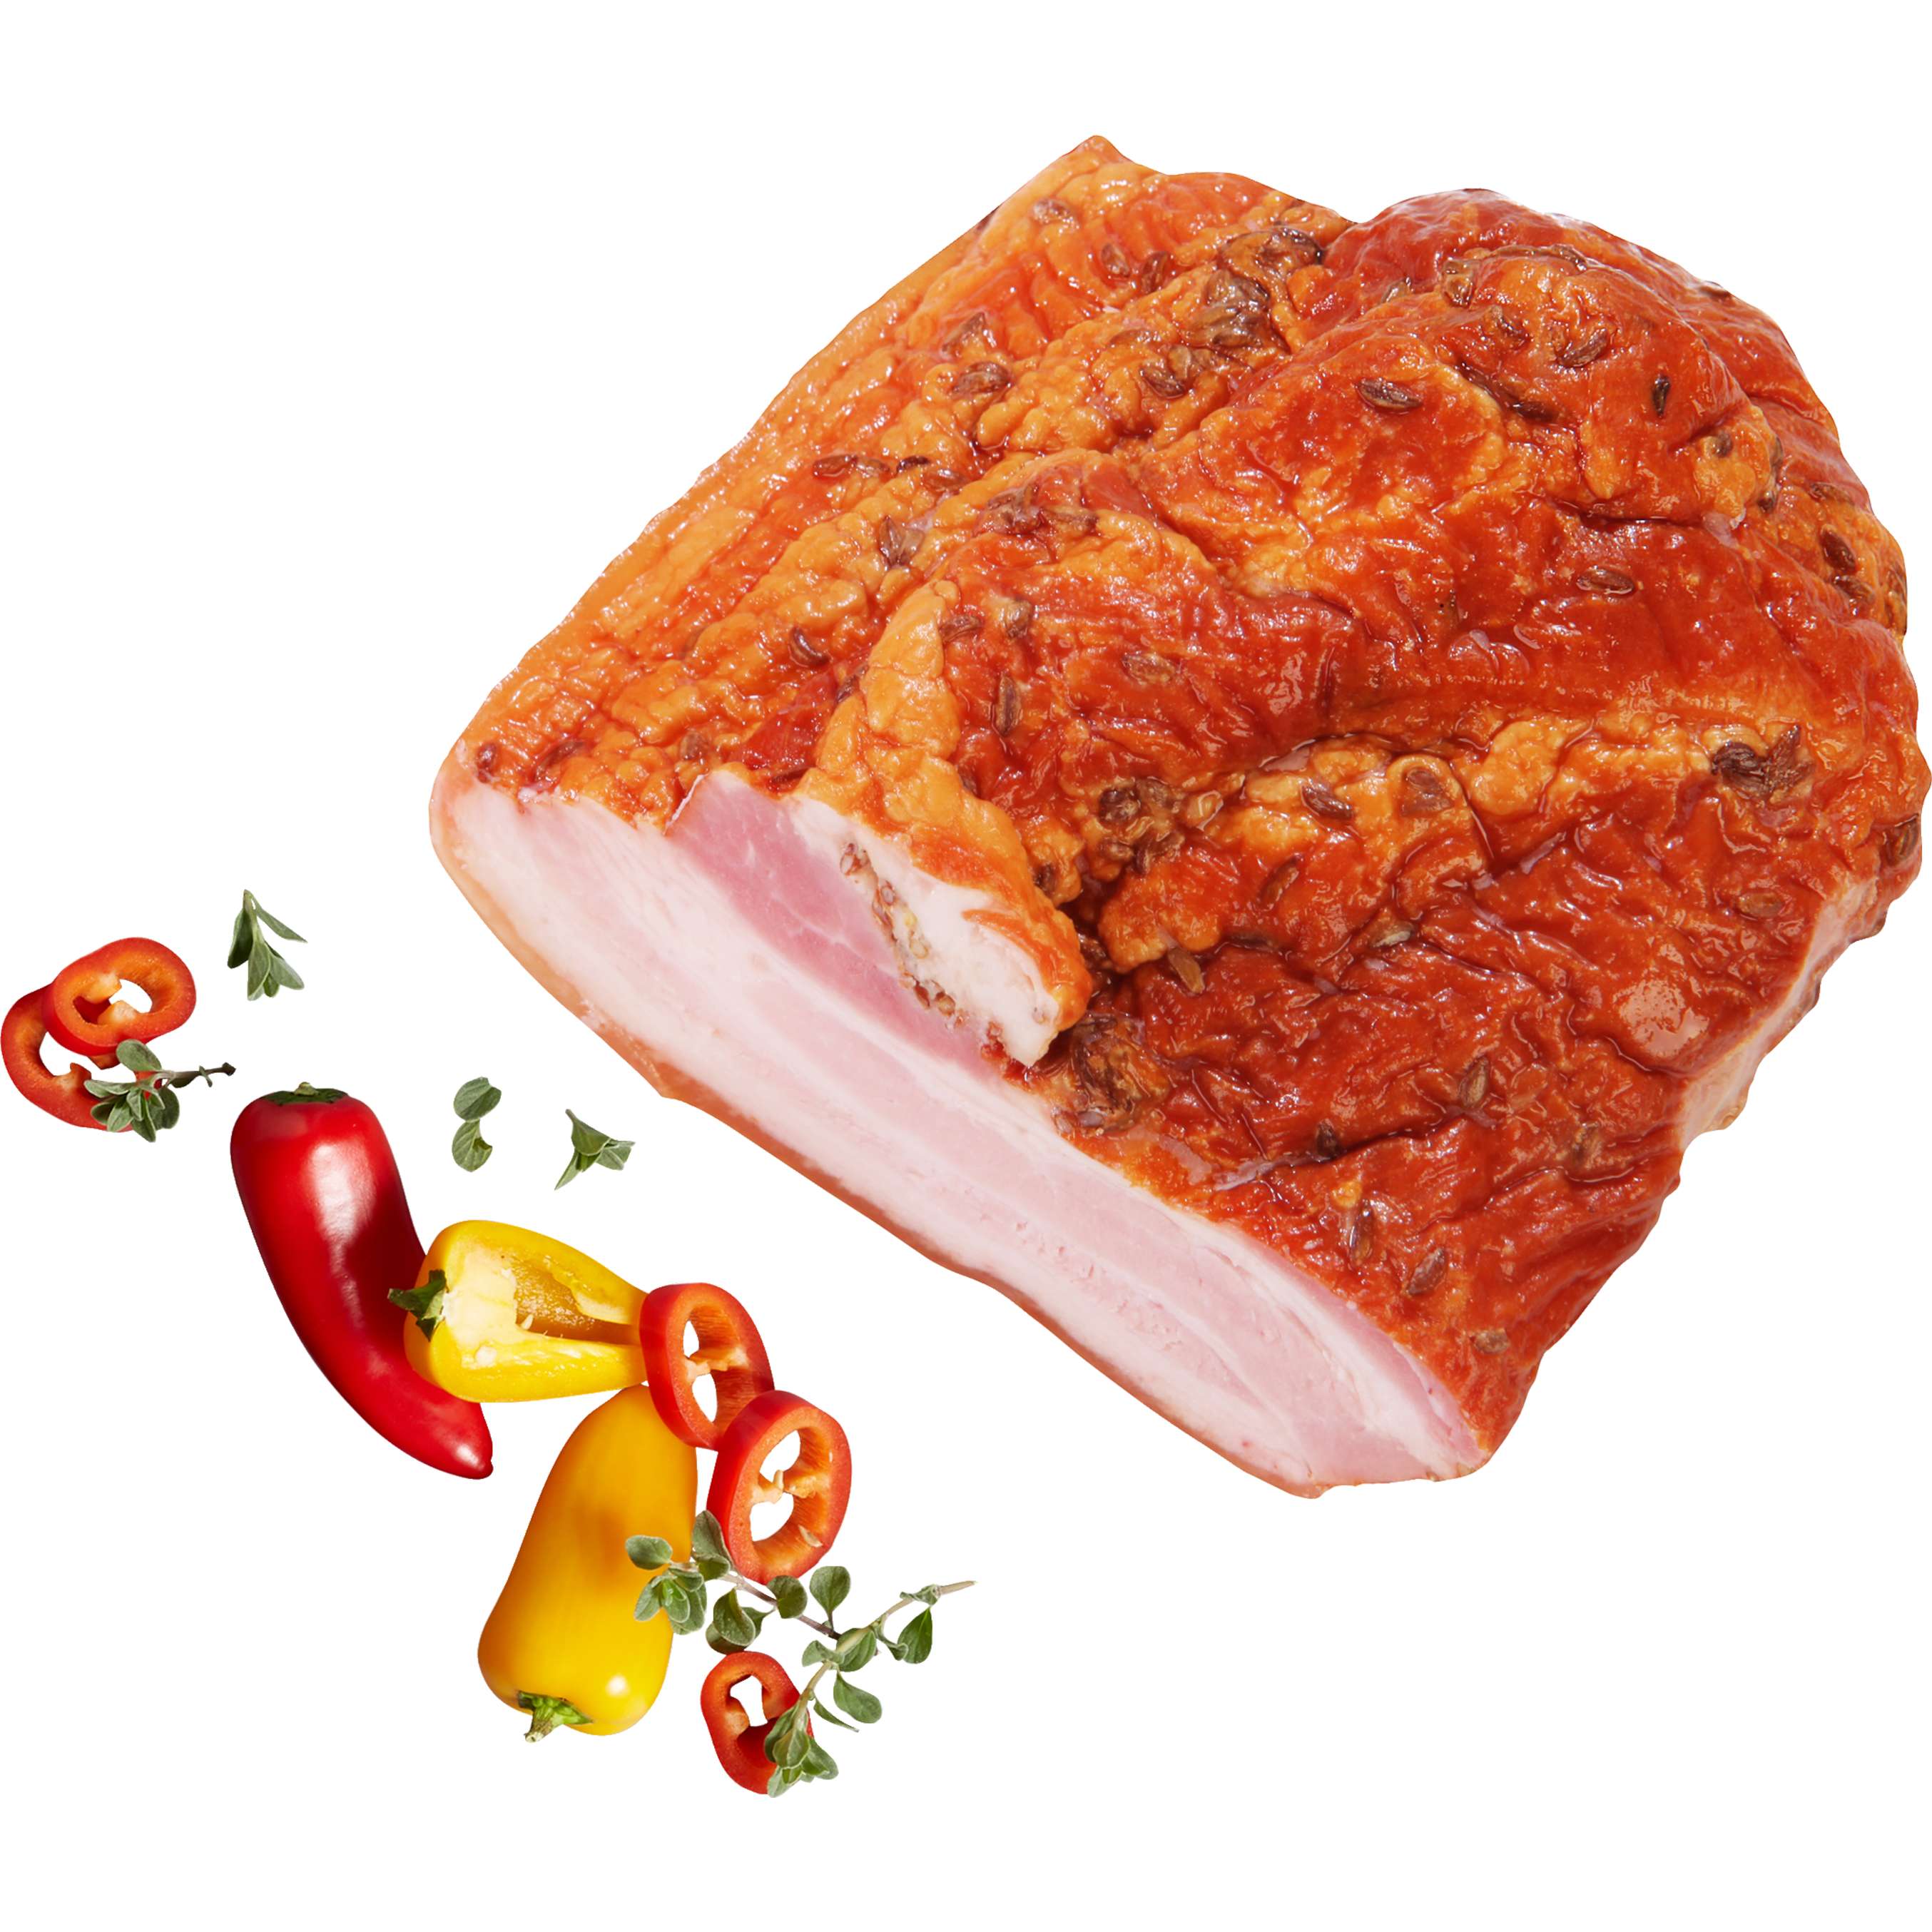 Zobrazit nabídku Gazdovská slanina uzené maso